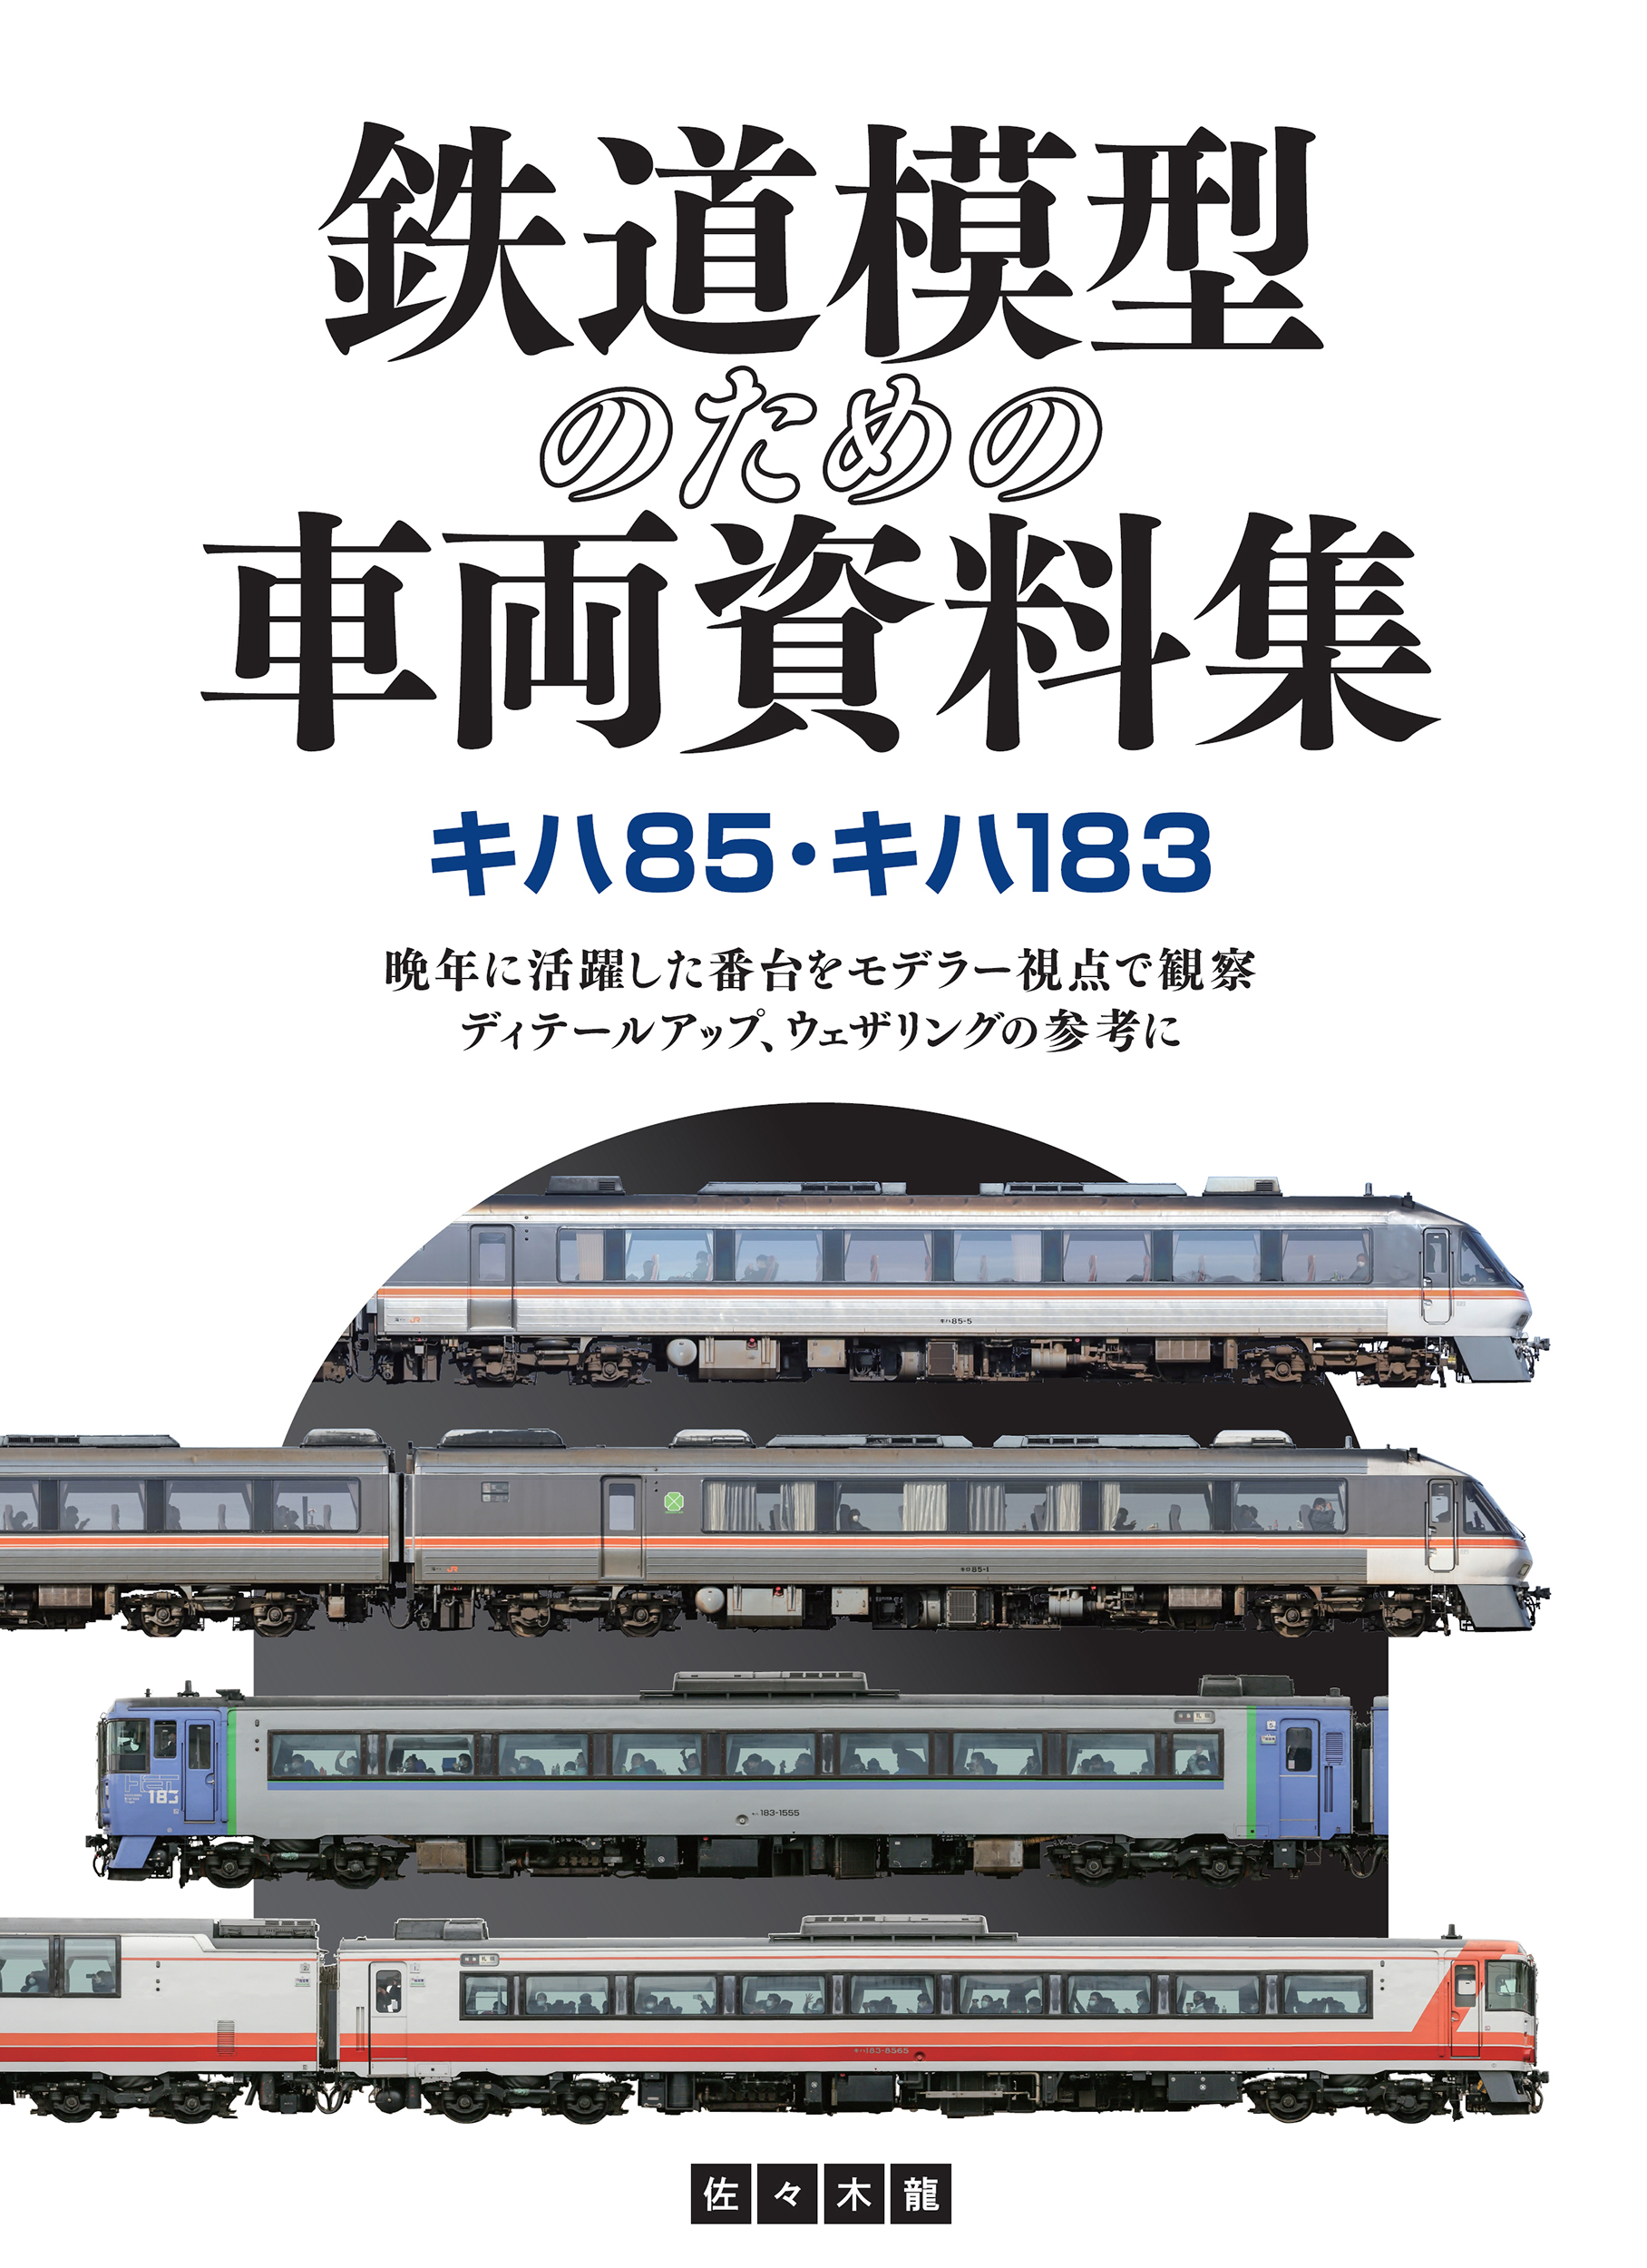 鉄道模型のための車両資料集 キハ85・キハ183の商品画像